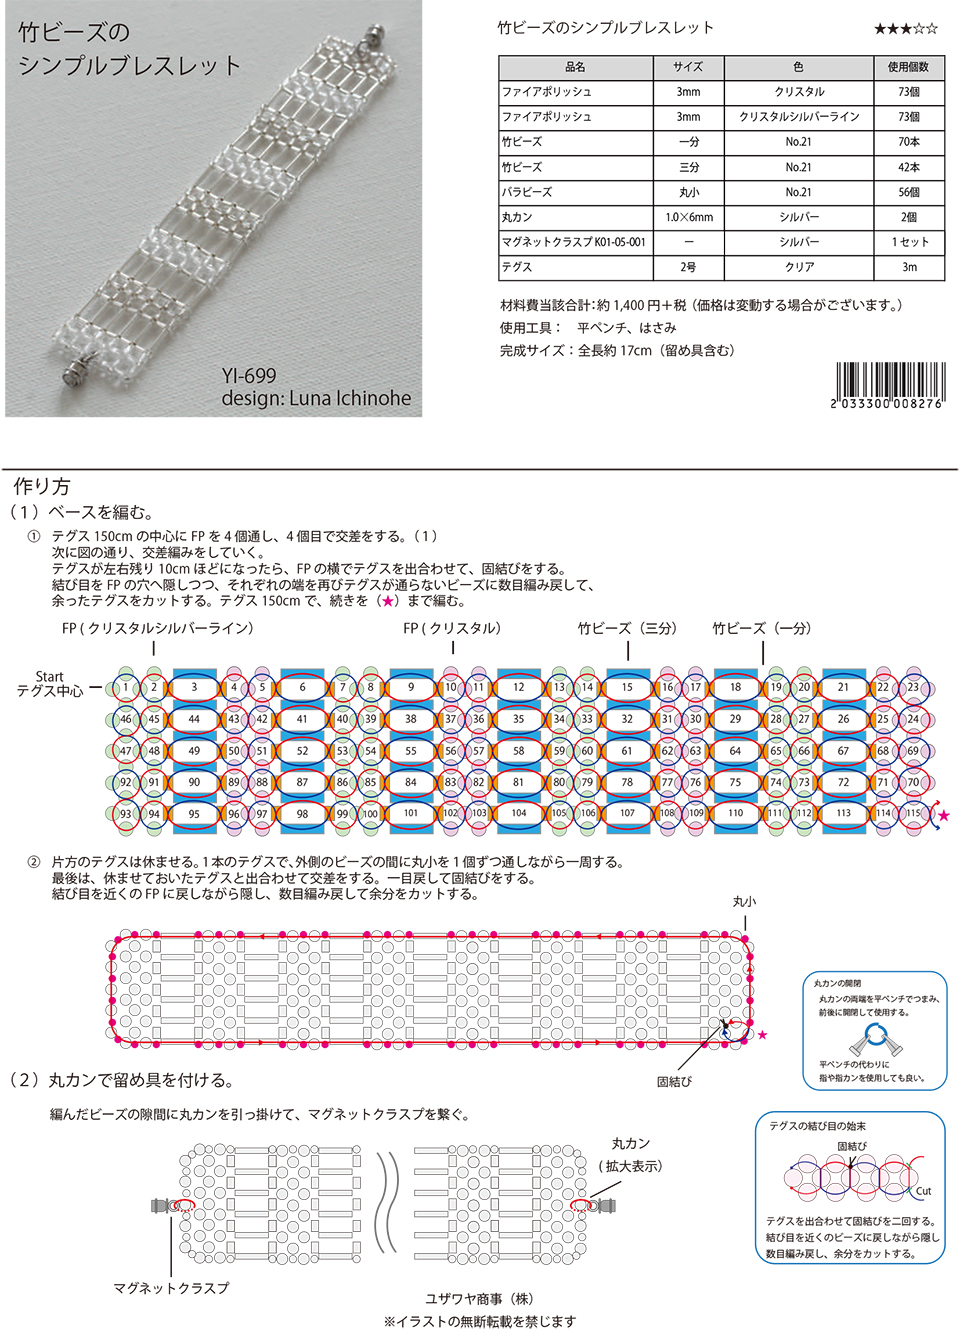 YI-699竹ビーズのシンプルブレスレット_1.jpg